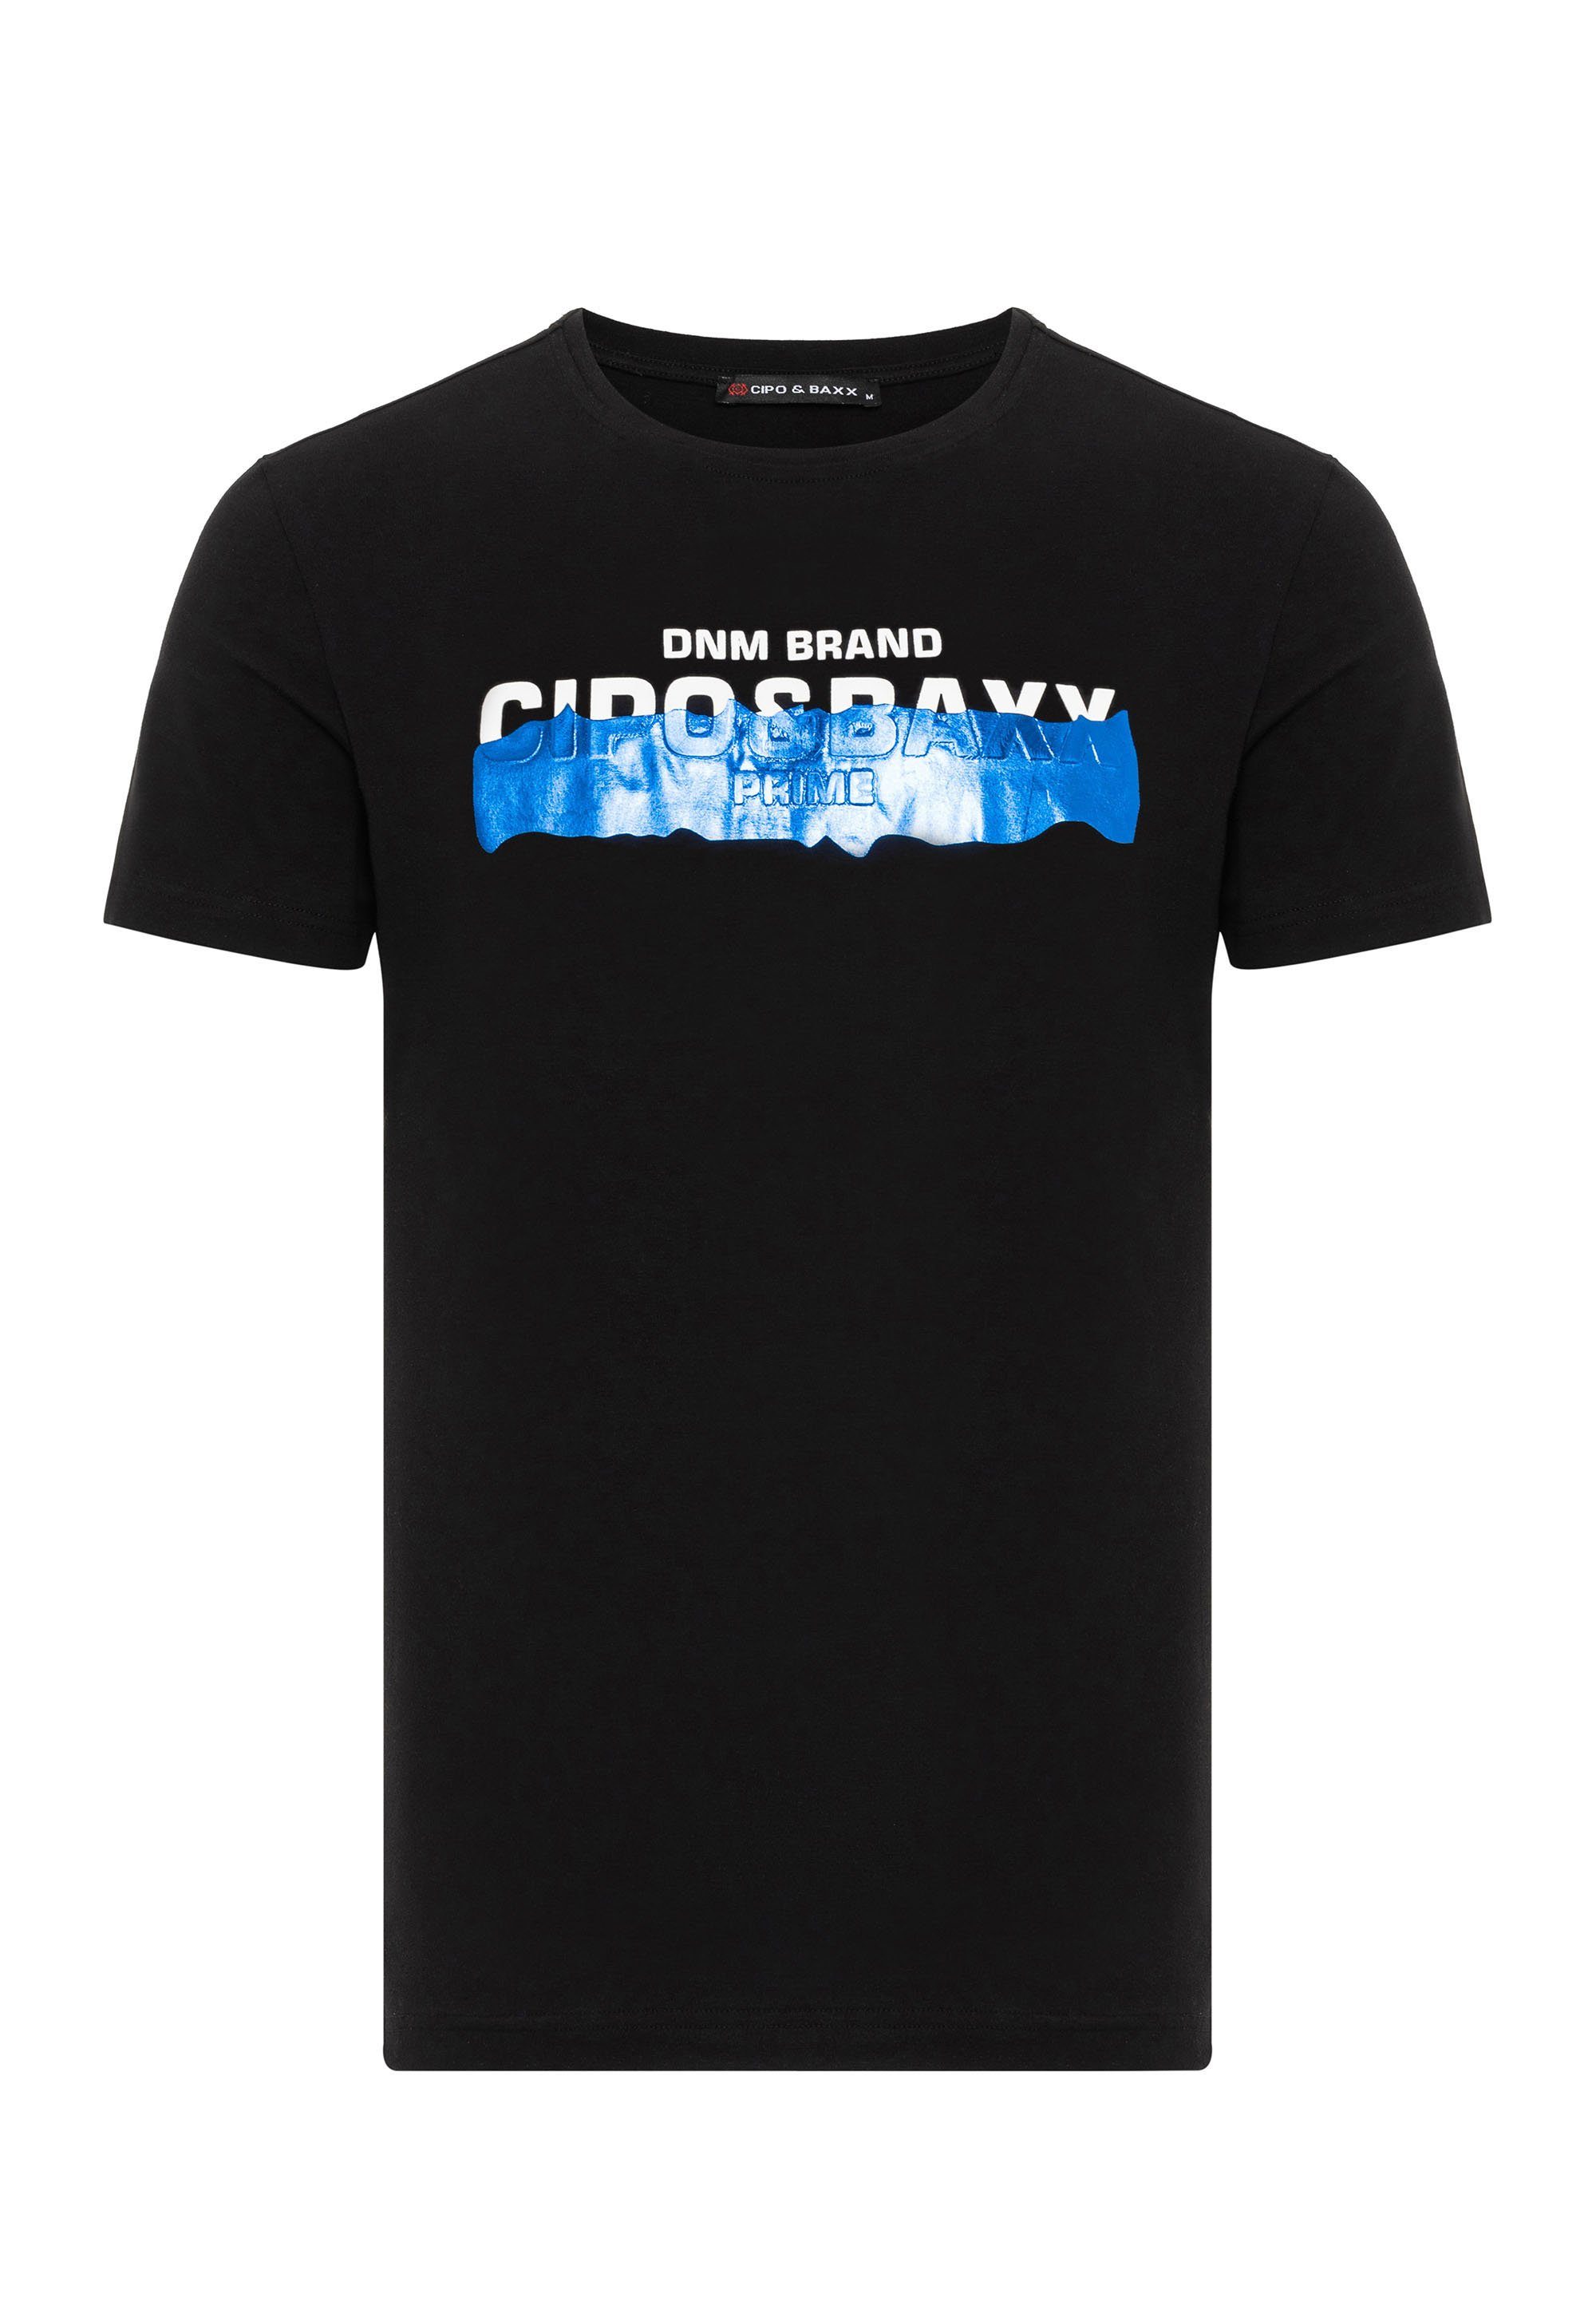 Baxx schwarz & T-Shirt Markenprint mit coolem Cipo